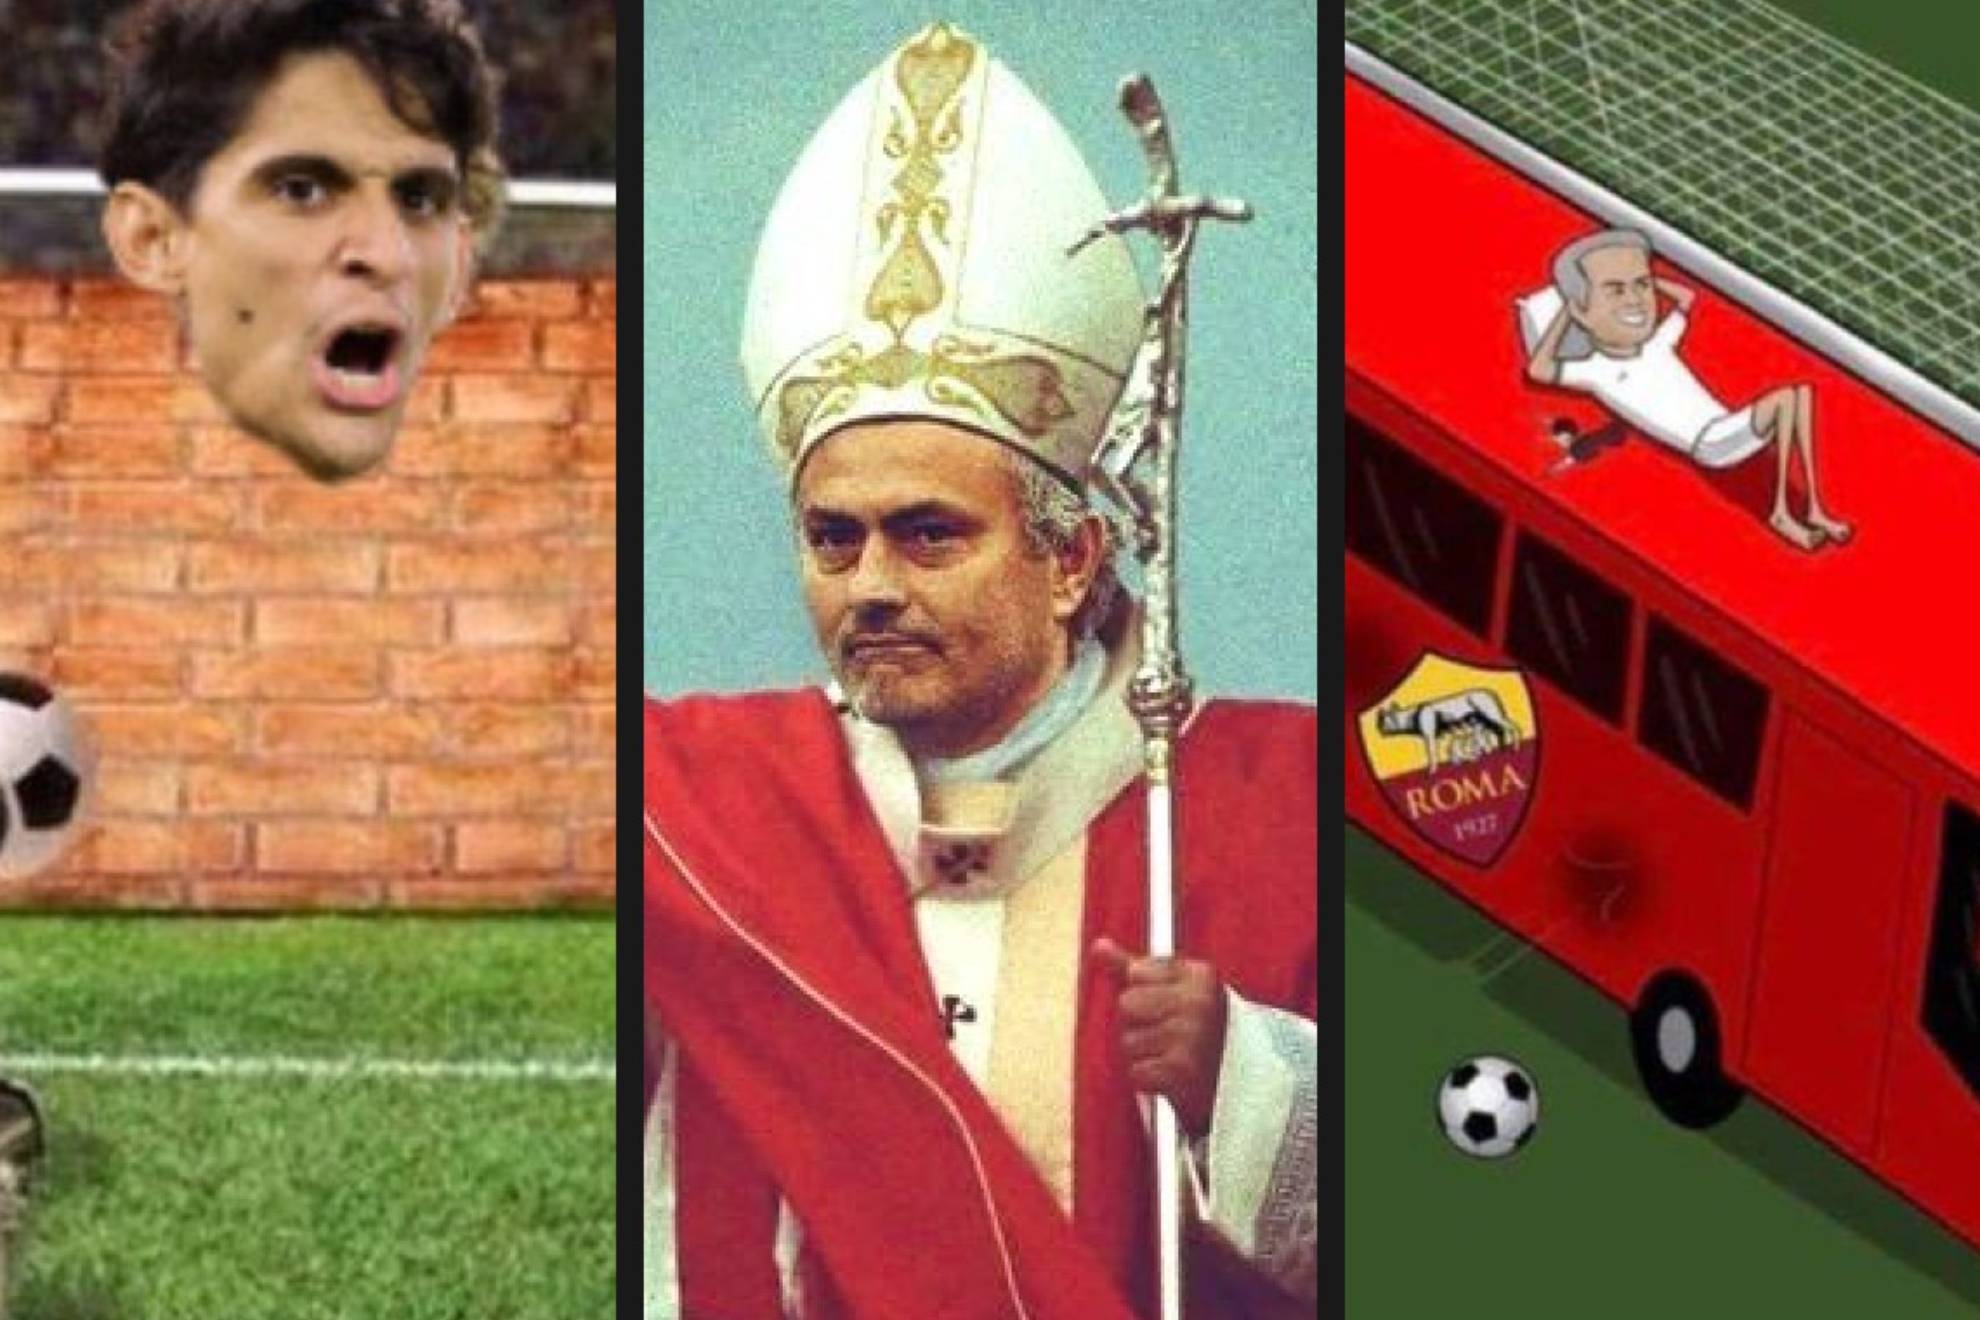 Las redes sociales reaccionaron en forma de memes y de montajes tras el triunfo del Sevilla contra la Roma en la final de la UEFA Europa League. José Mourinho fue el protagonista de las críticas más satíricas y cómicas.